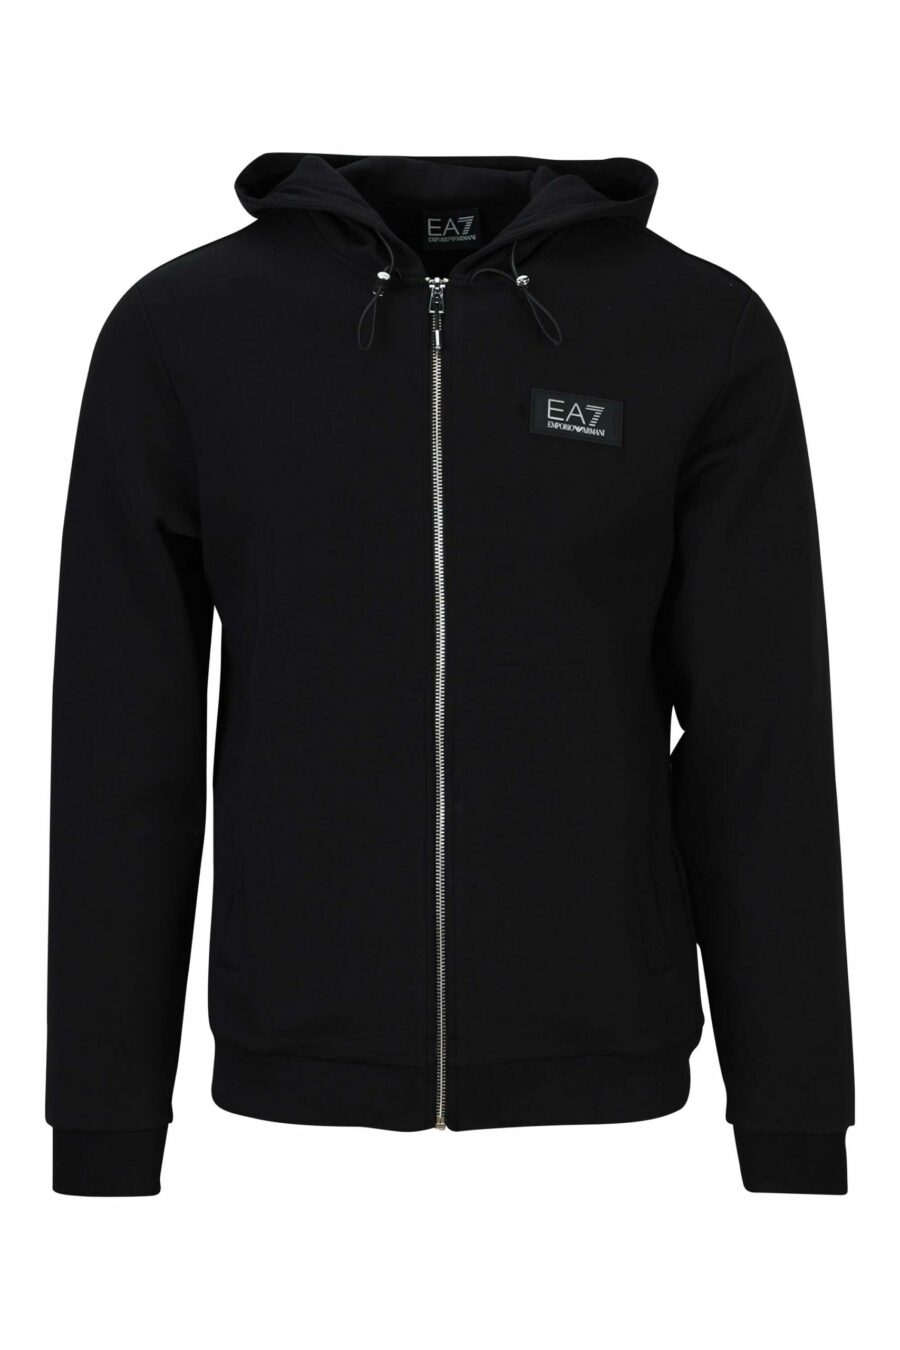 Schwarzes Kapuzensweatshirt mit Minilogue "lux identity" auf schwarzem Abzeichen - 8058947471003 skaliert